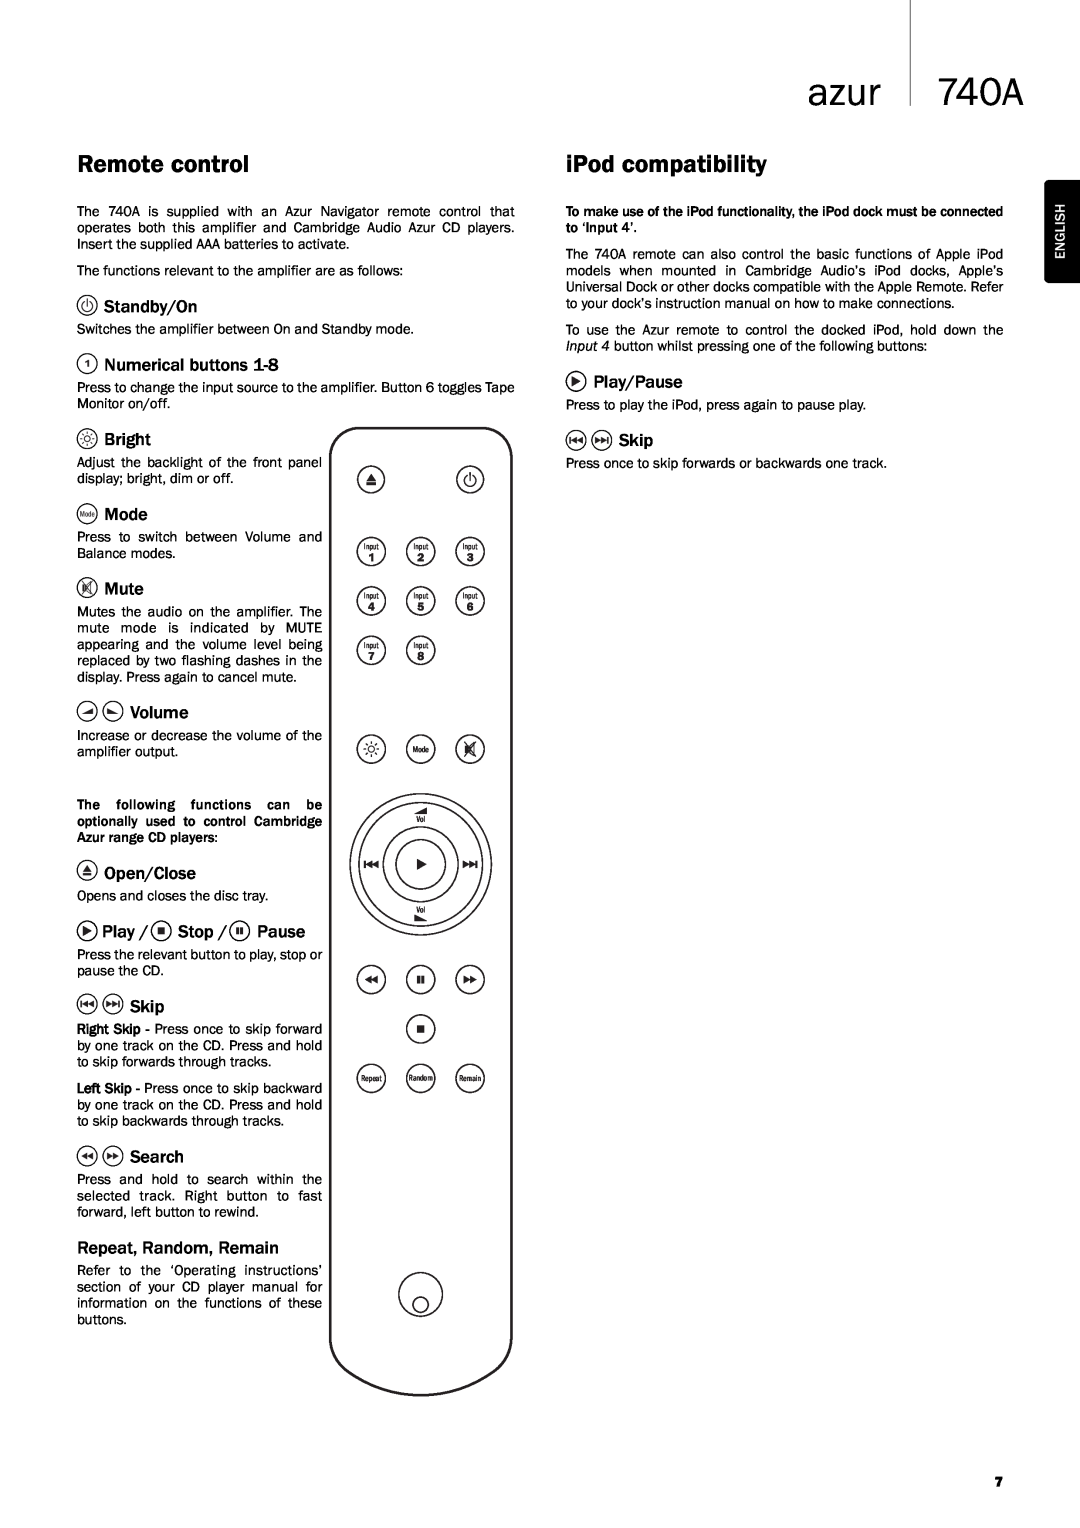 Cambridge Audio Azur 740A user manual Remote control, iPod compatibility, azur 740A, Open/Close 